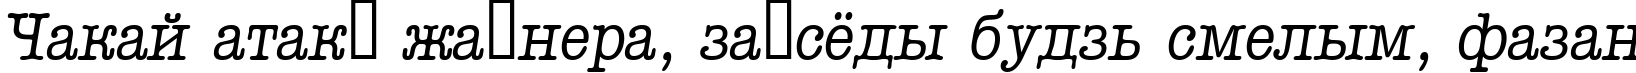 Пример написания шрифтом a_OldTyperNr Italic текста на белорусском